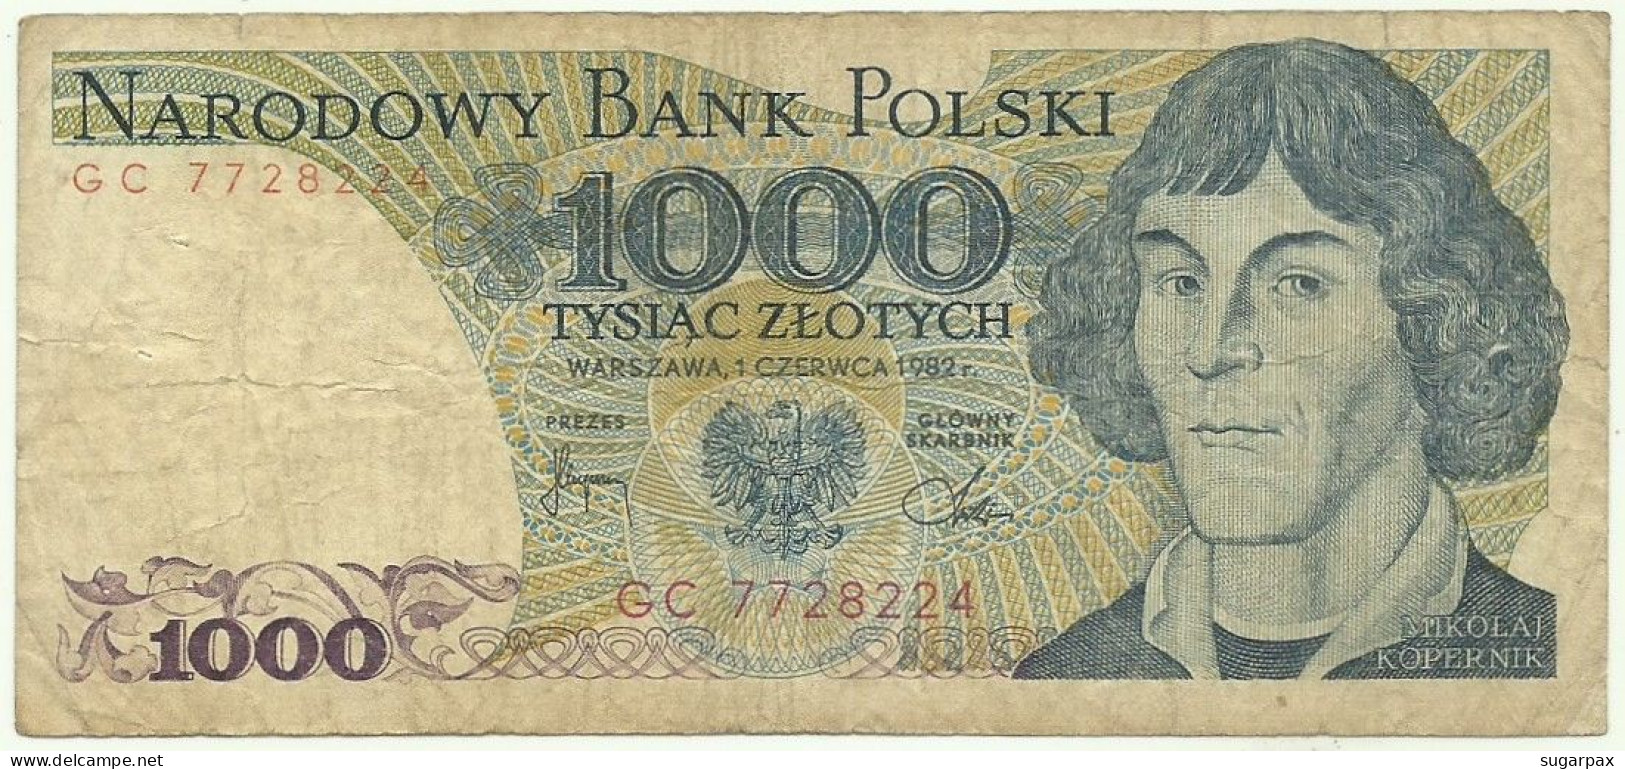 POLAND - 1000 Zlotych - 1982 - Pick 146.c - Série GC - Narodowy Bank Polski - 1.000 - Pologne